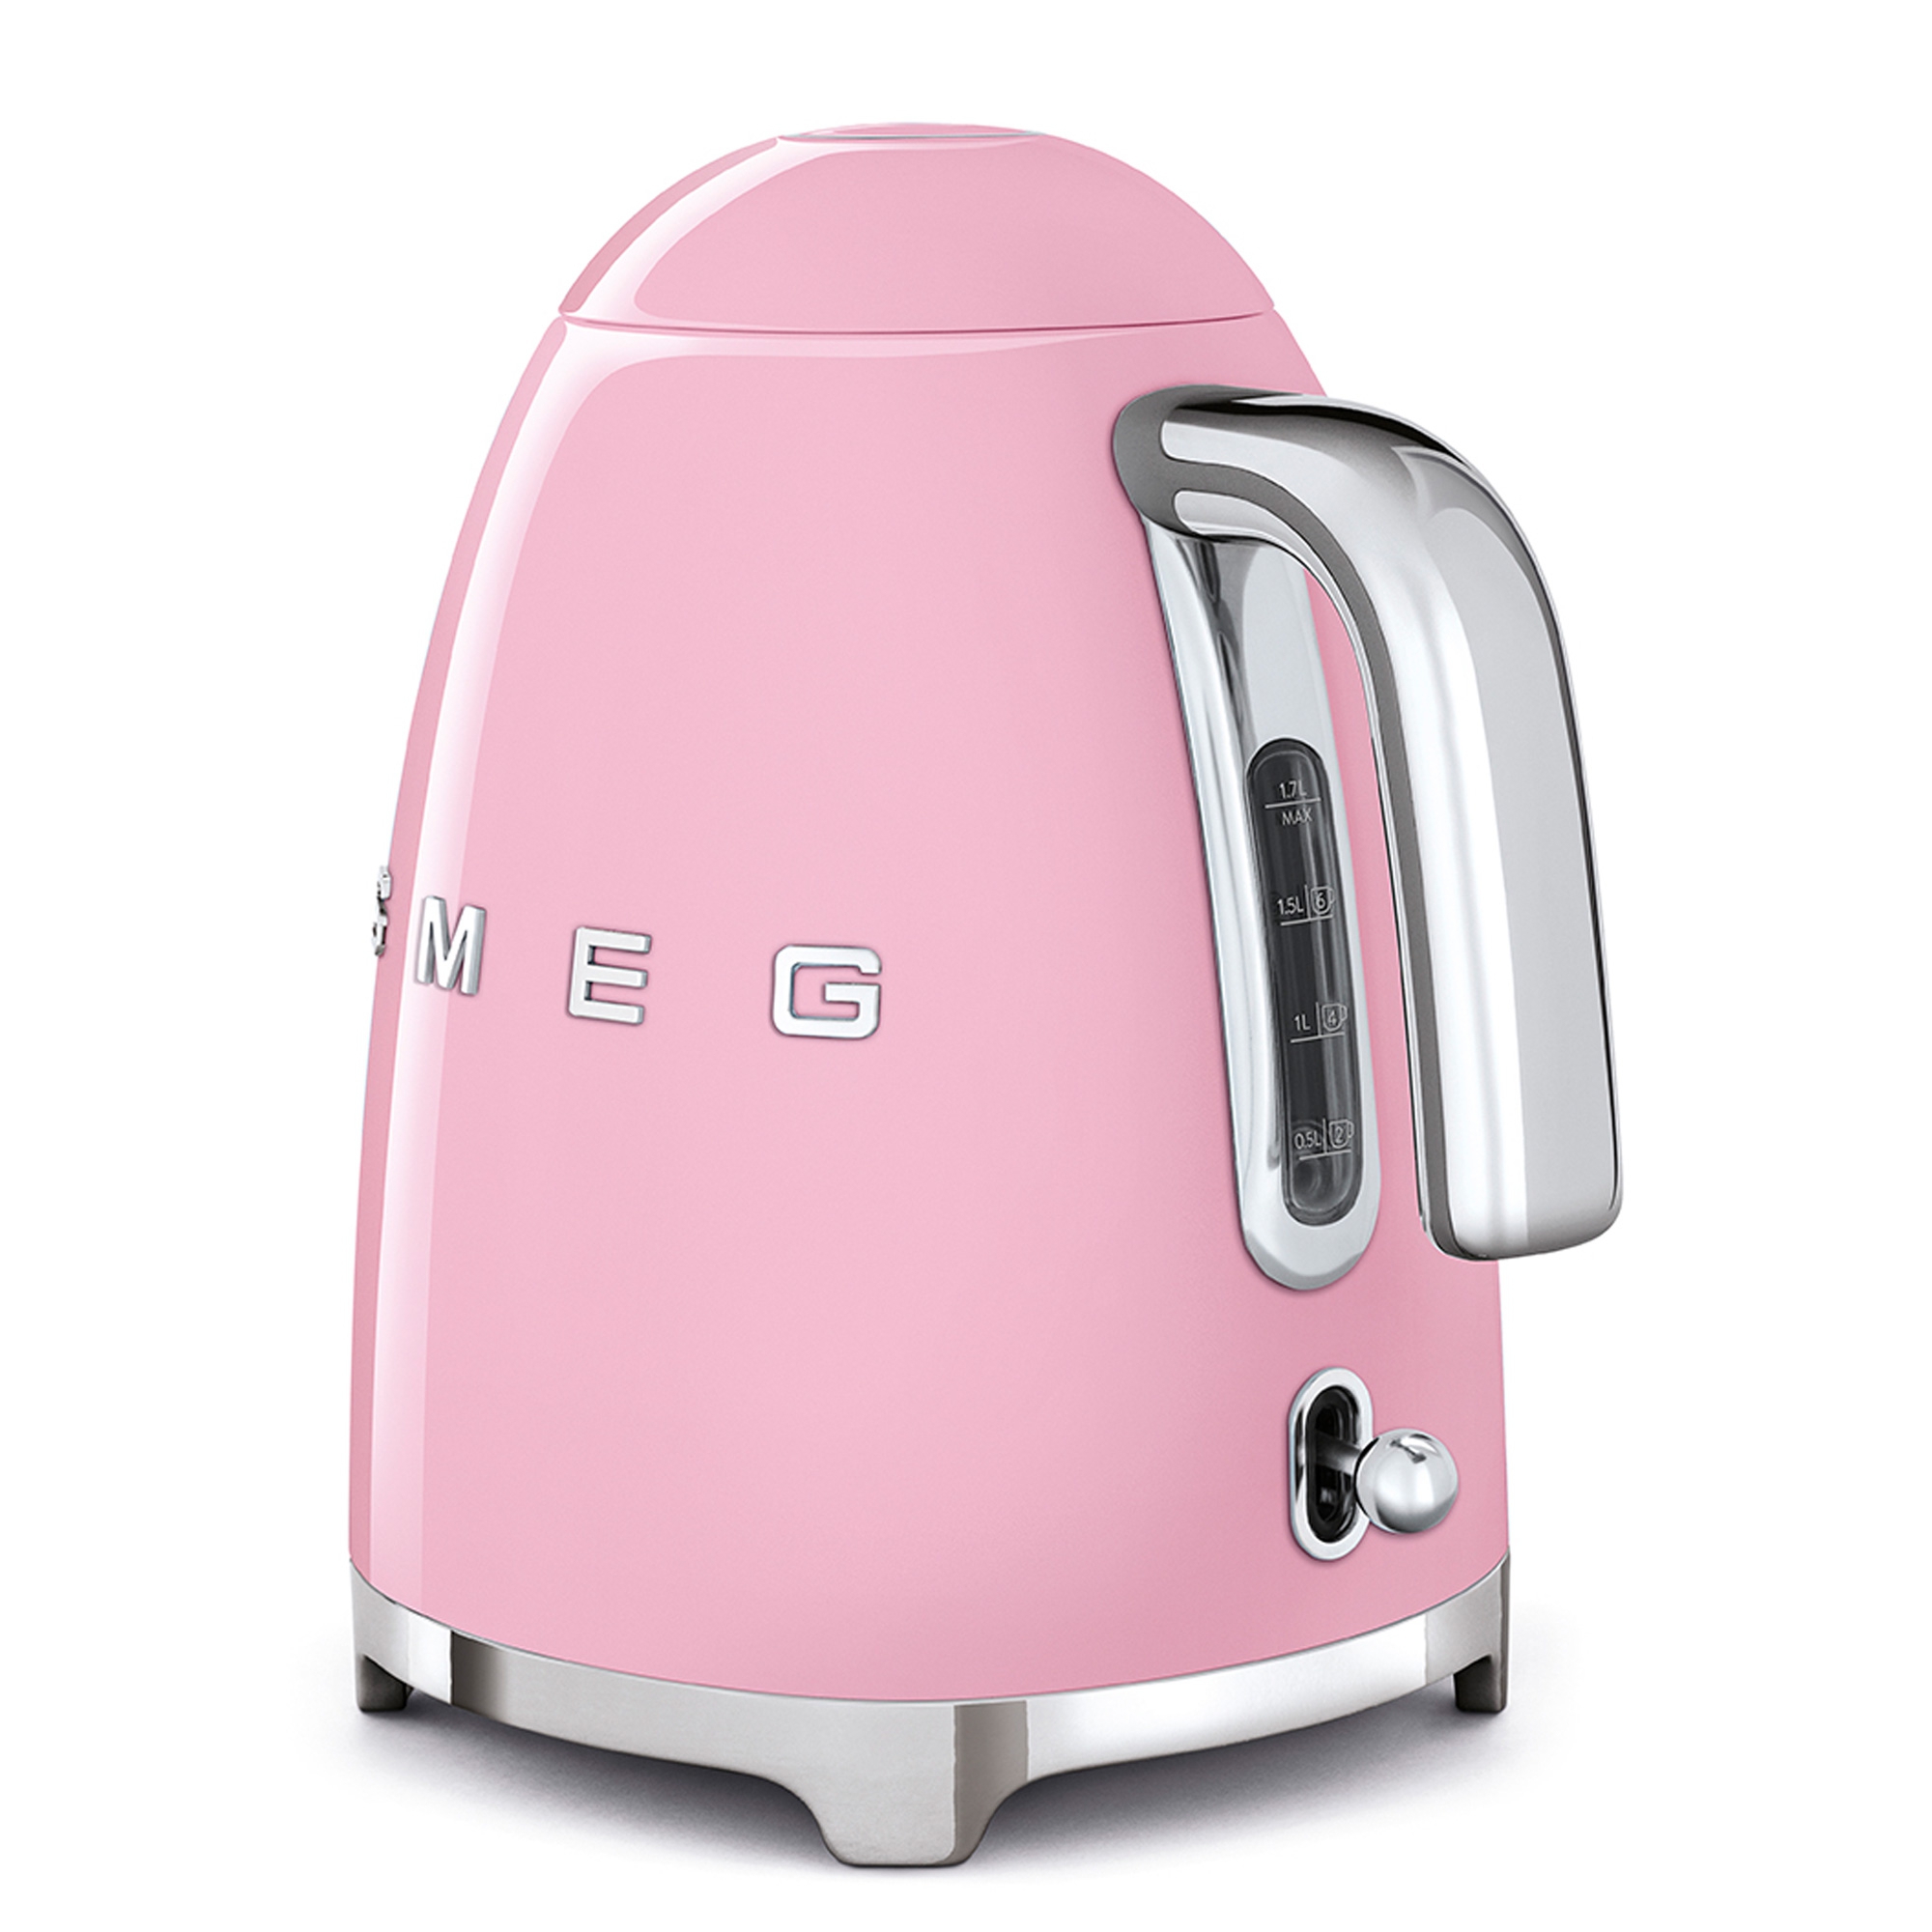 Smeg - 1,7L Wasserkocher - Designlinie Stil Der 50° Jahre - pink